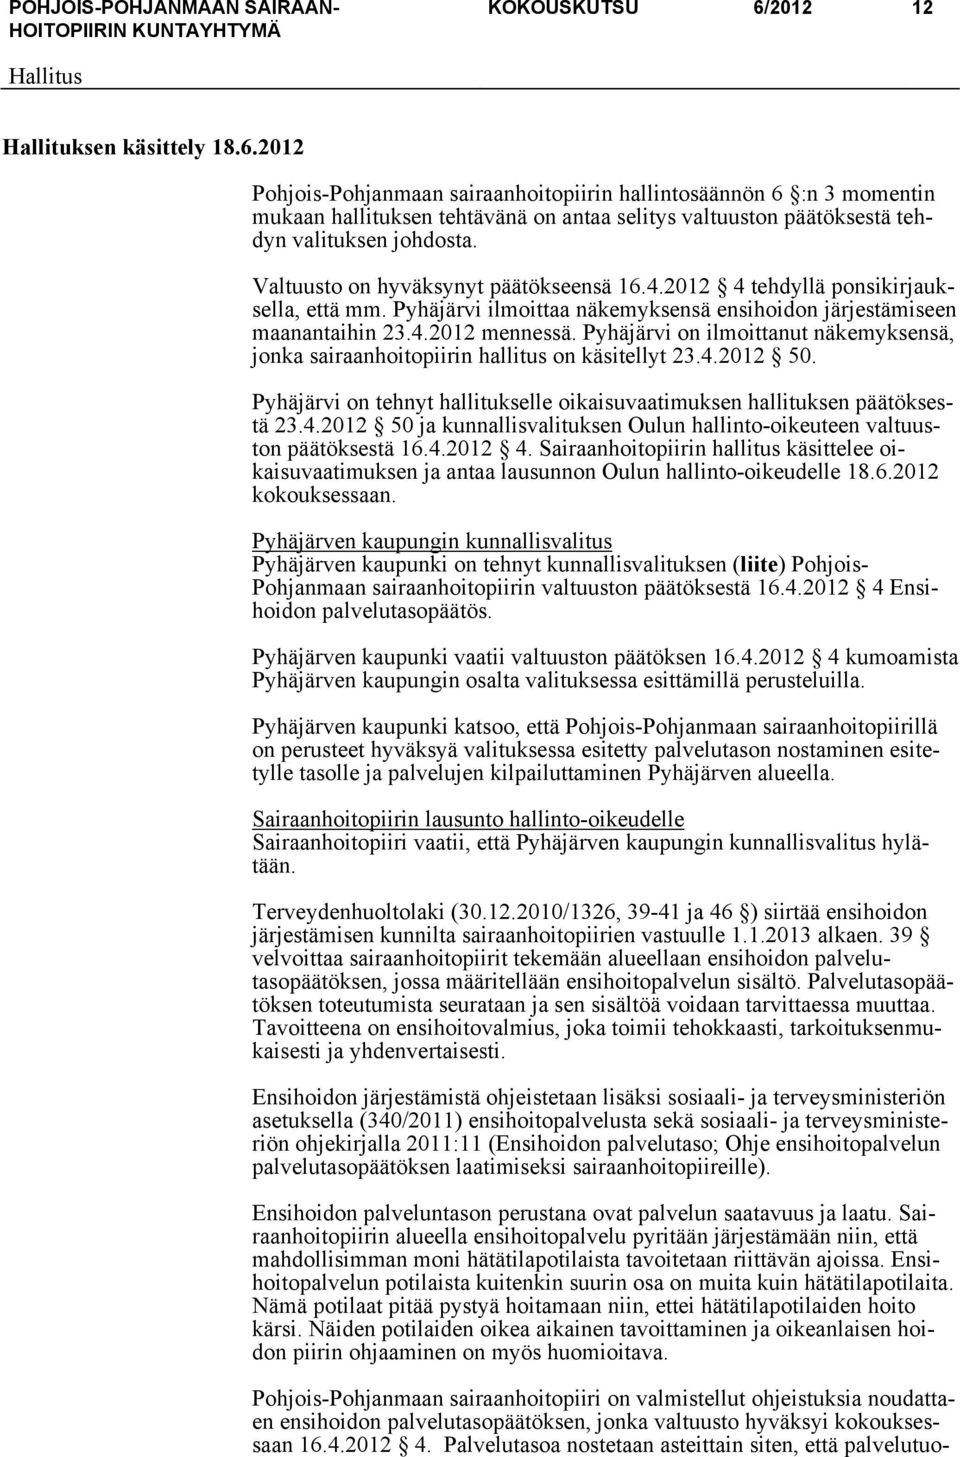 Pyhäjärvi on ilmoittanut näkemyksensä, jonka sairaanhoitopiirin hallitus on käsitellyt 23.4.2012 50. Pyhäjärvi on tehnyt hallitukselle oikaisuvaatimuksen hallituksen päätöksestä 23.4.2012 50 ja kunnallisvalituksen Oulun hallinto-oikeuteen valtuuston päätöksestä 16.